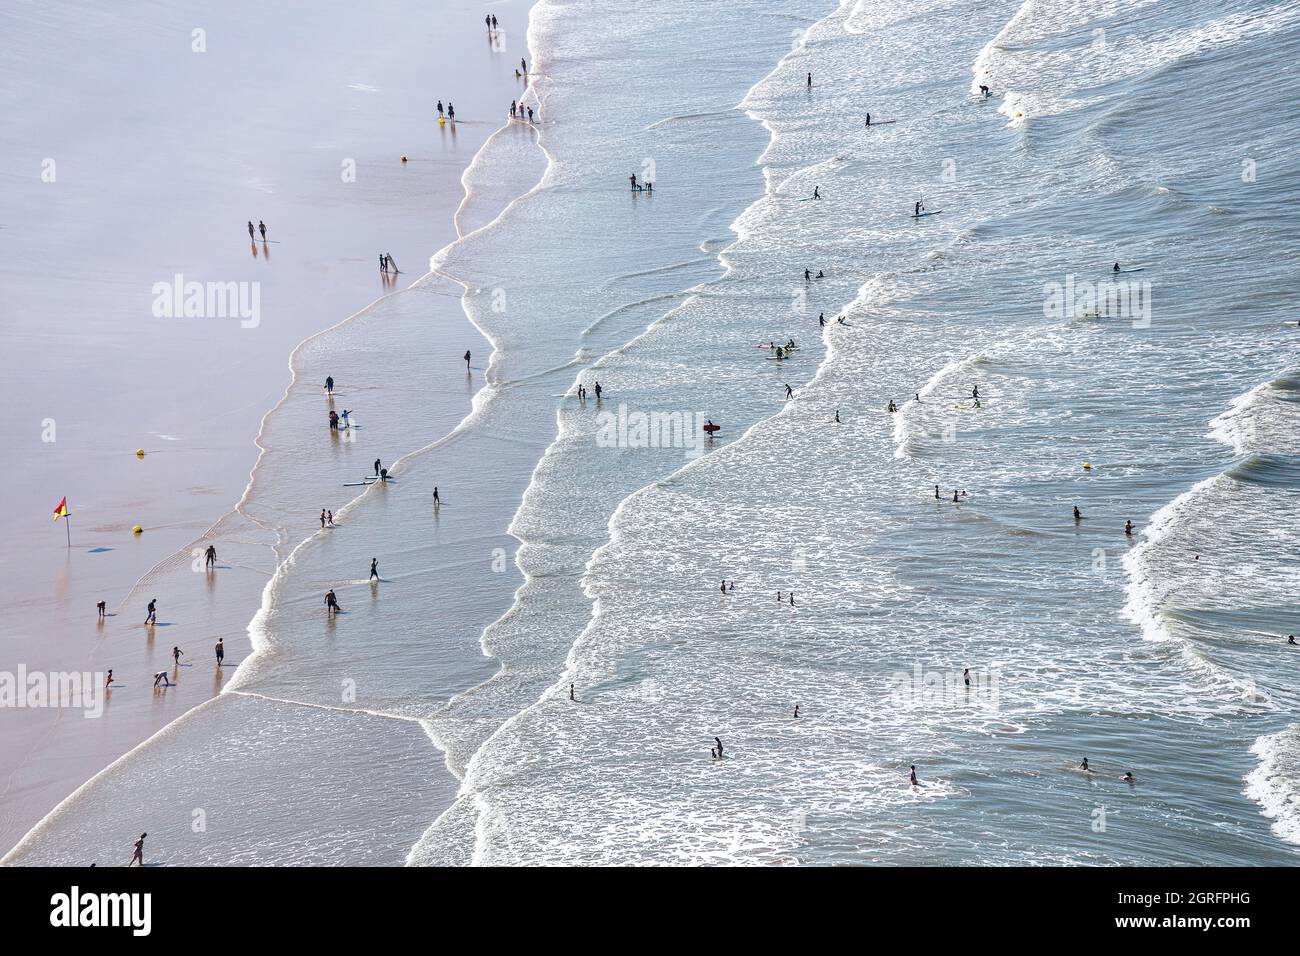 Francia, Vendee, Bretignolles sur Mer, escursionisti e bagnanti sulla spiaggia (vista aerea) Foto Stock